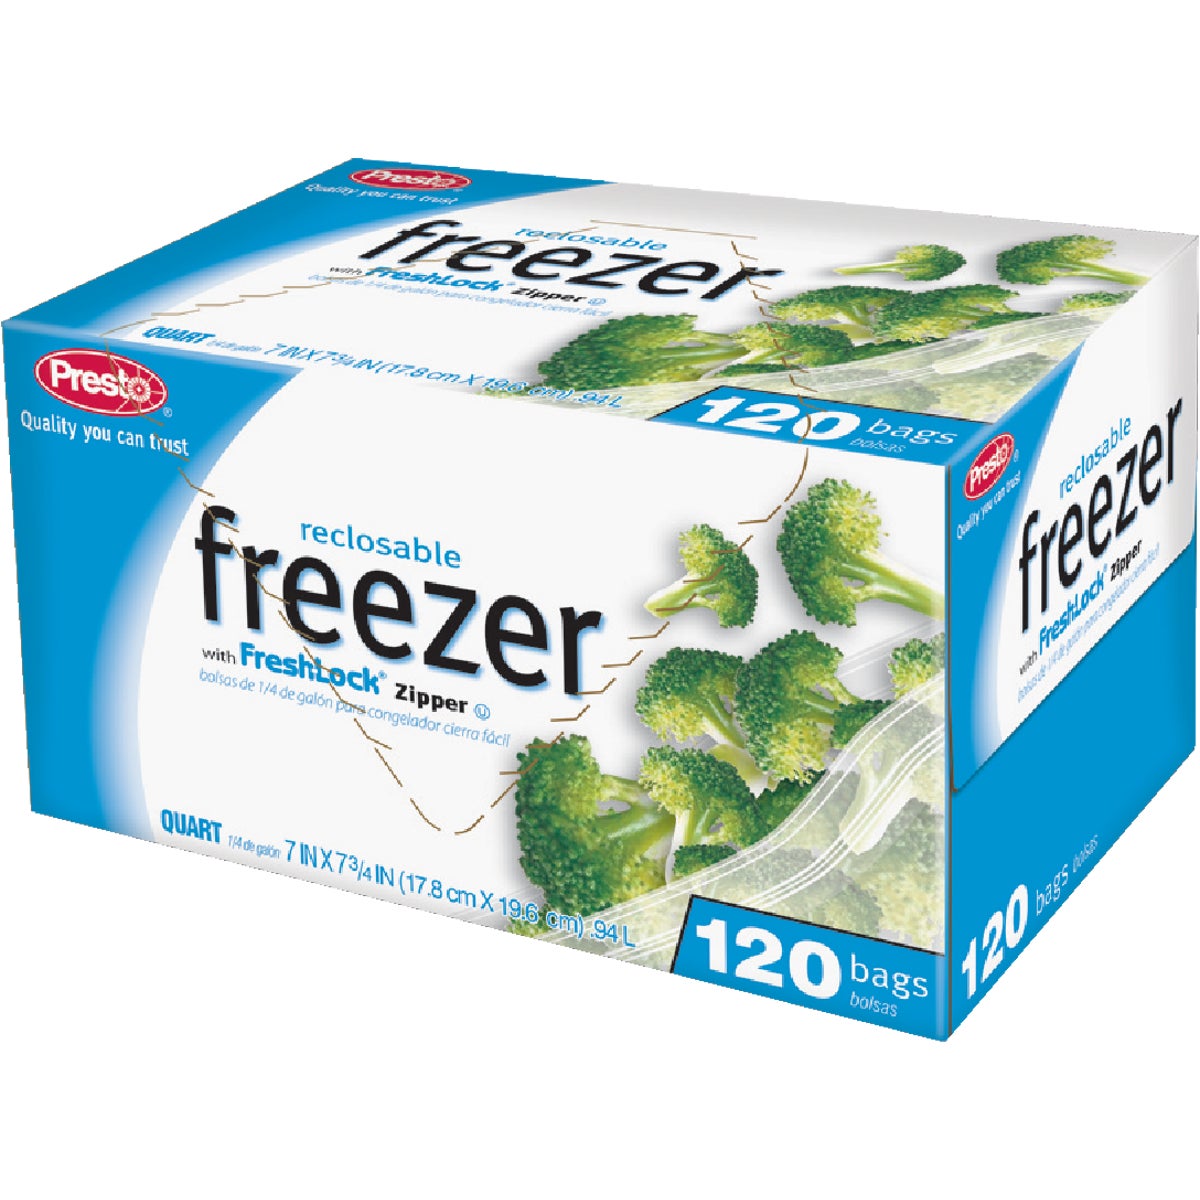 Presto 1 Qt. Reclosable Freezer Bag (120 Count)